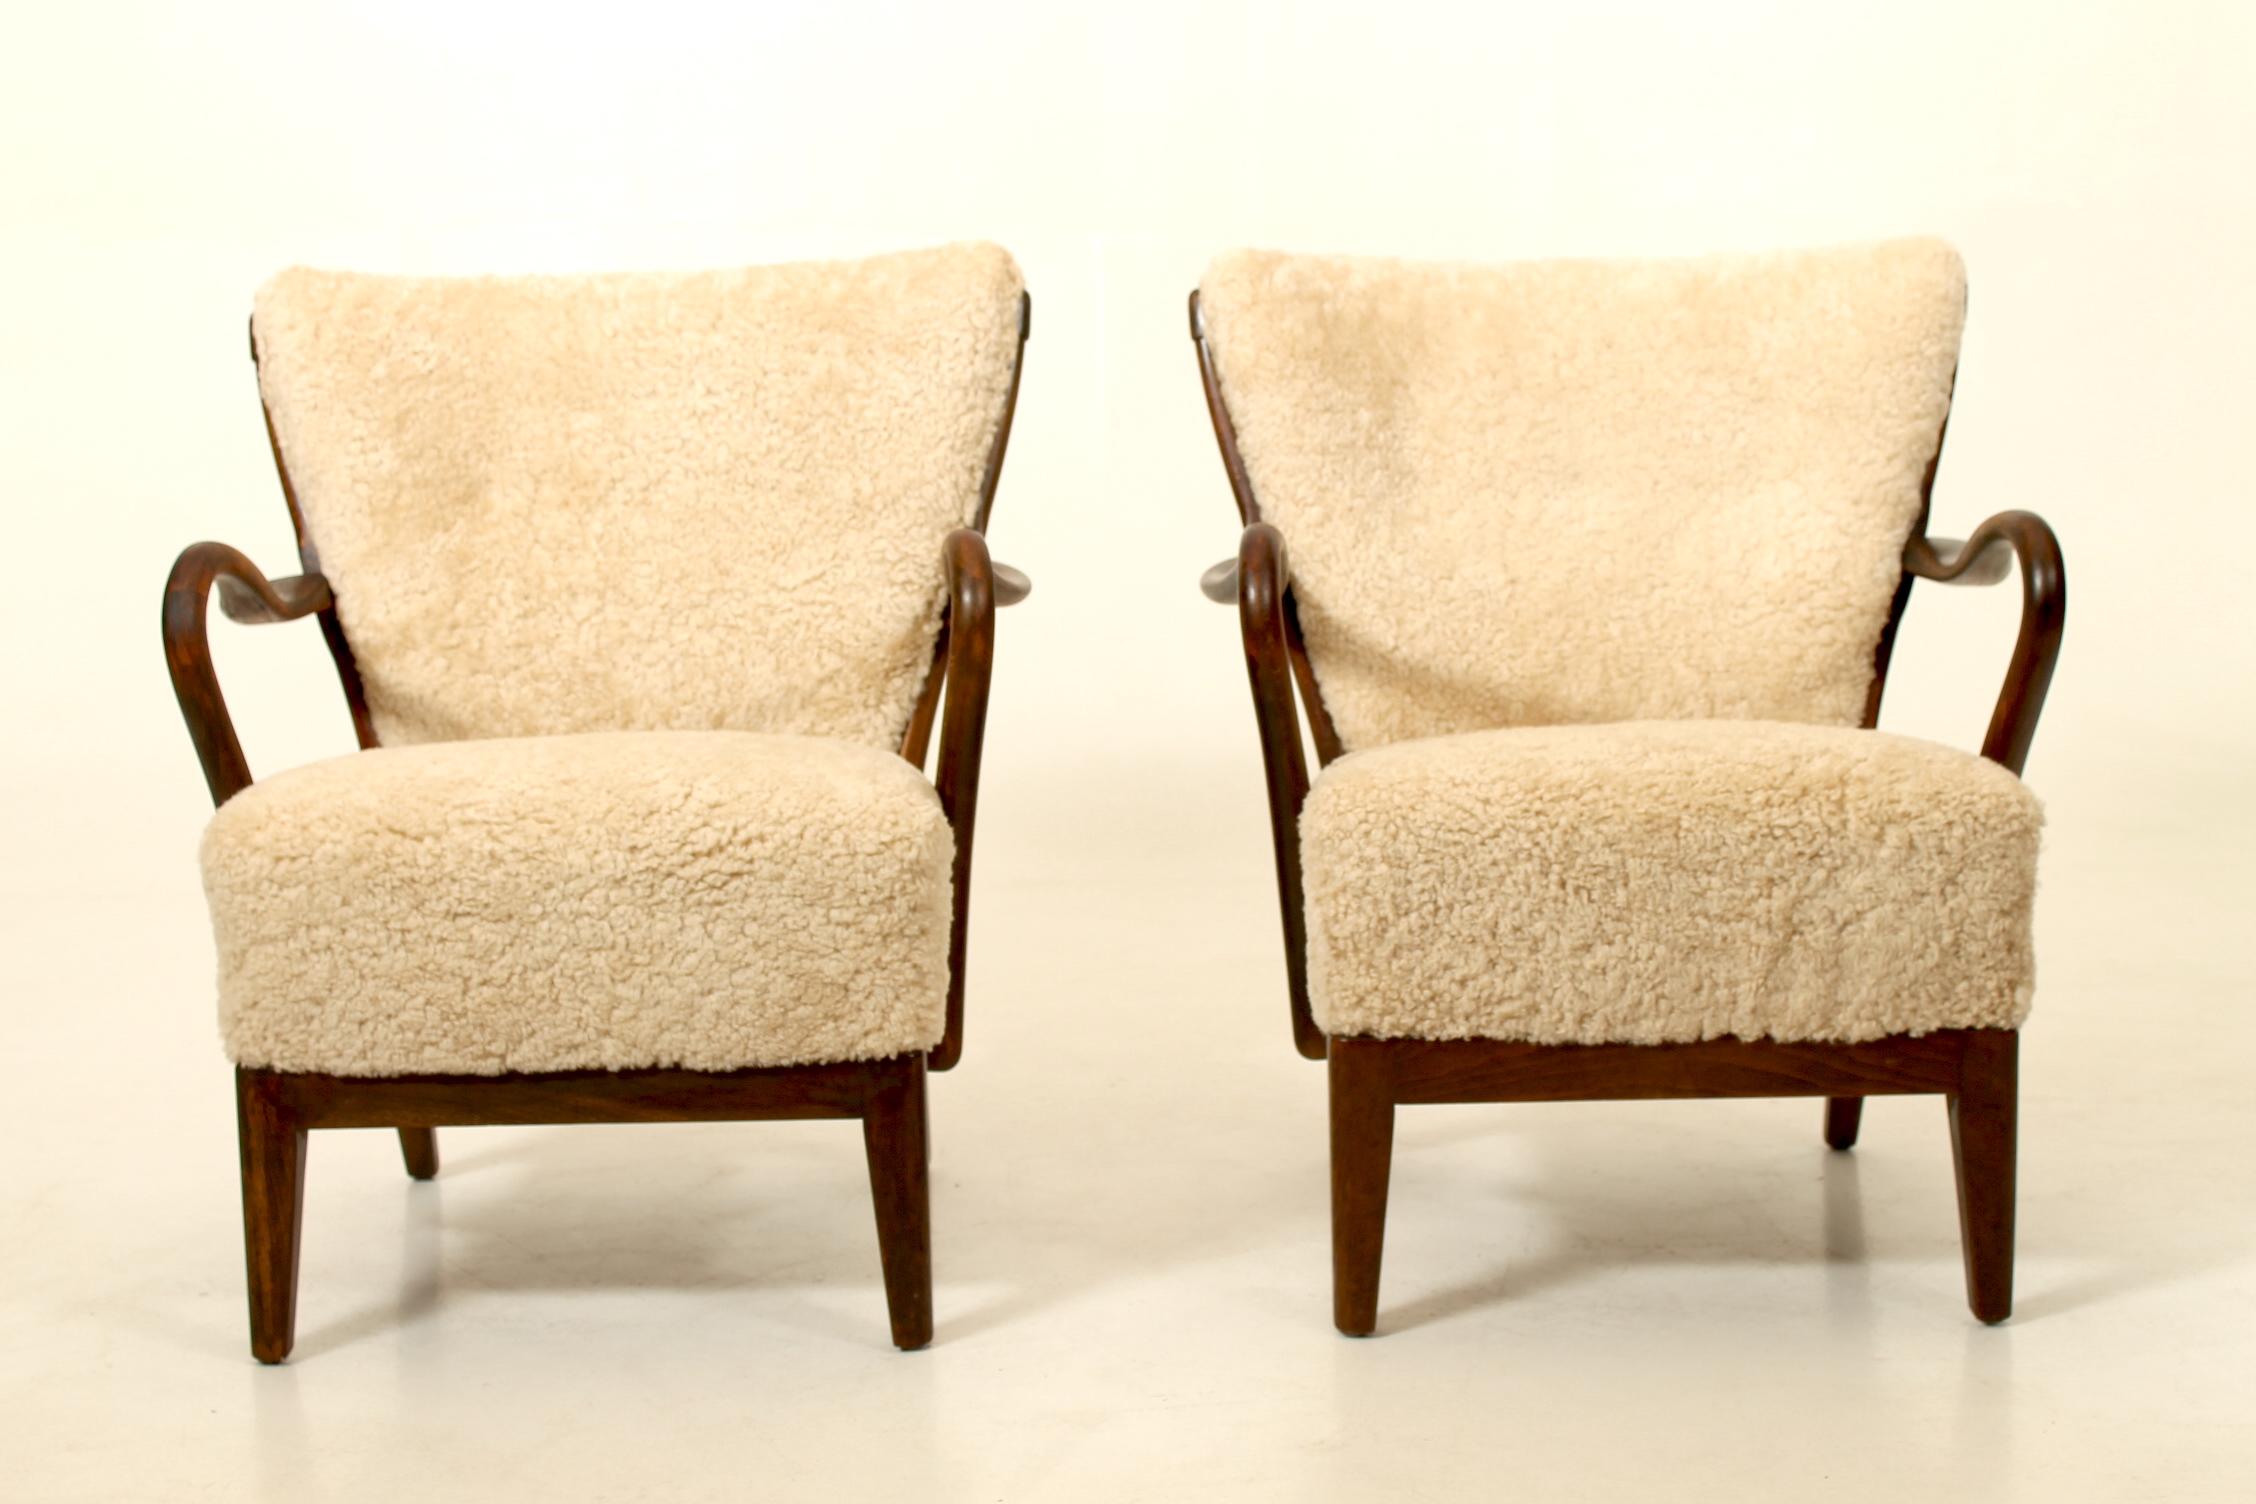 Paire de rares chaises longues conçues par Alfred Christensen dans les années 1940 et produites par Slagelse Møbelværk. Restauré avec une nouvelle peau de mouton. 

